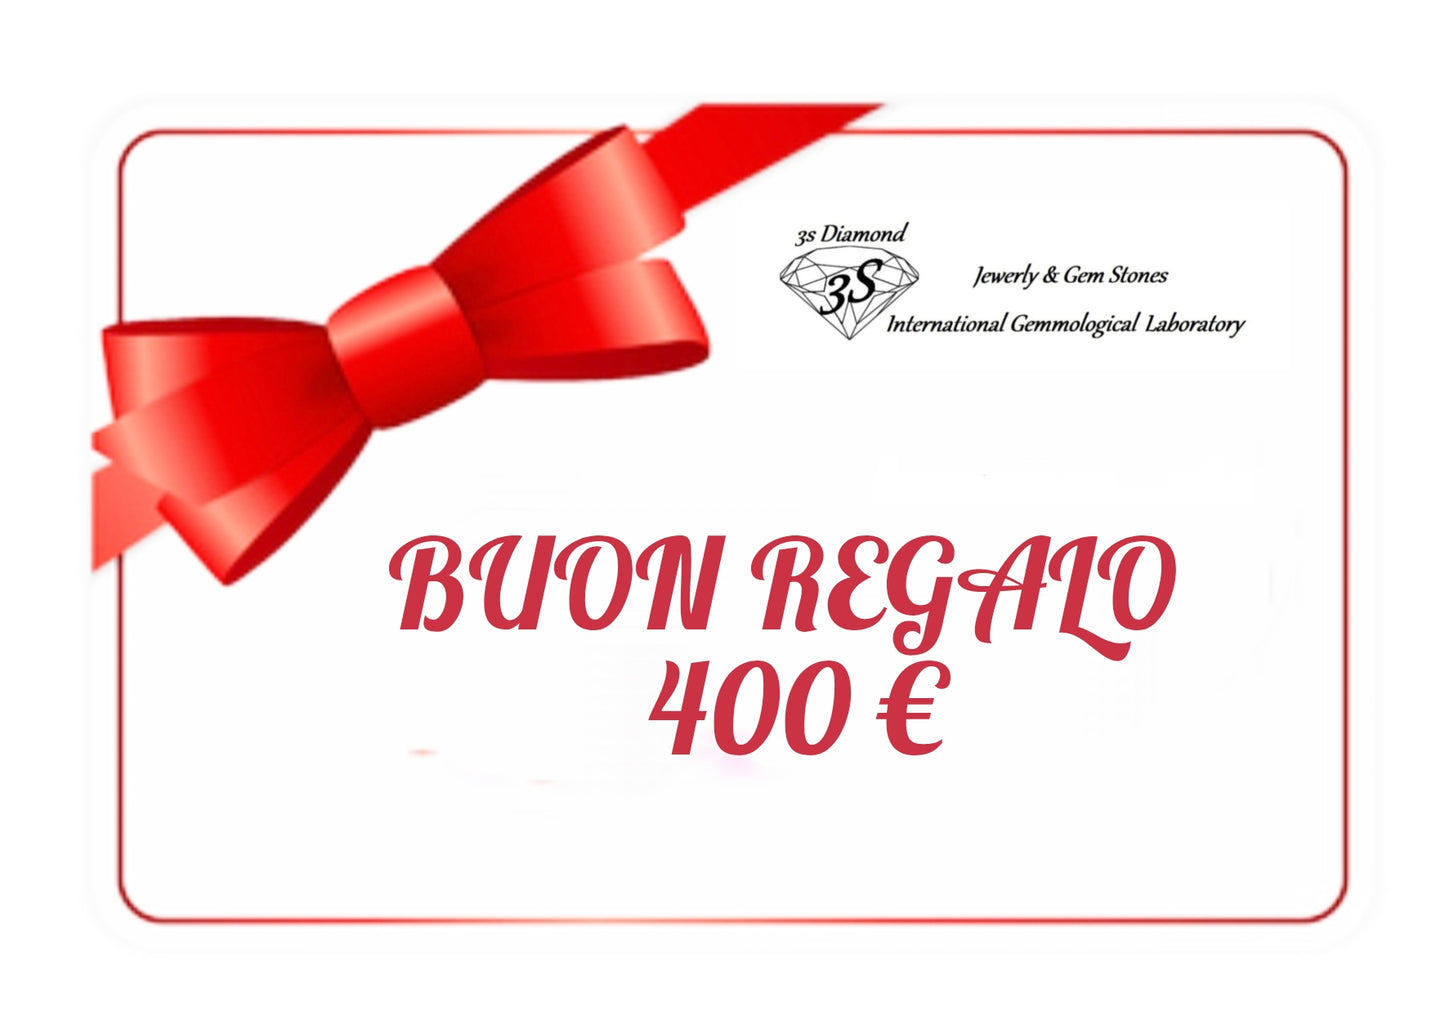 Tessera carta regalo da 150 euro a 500 euro per regalare da utilizzare in 12 mesi